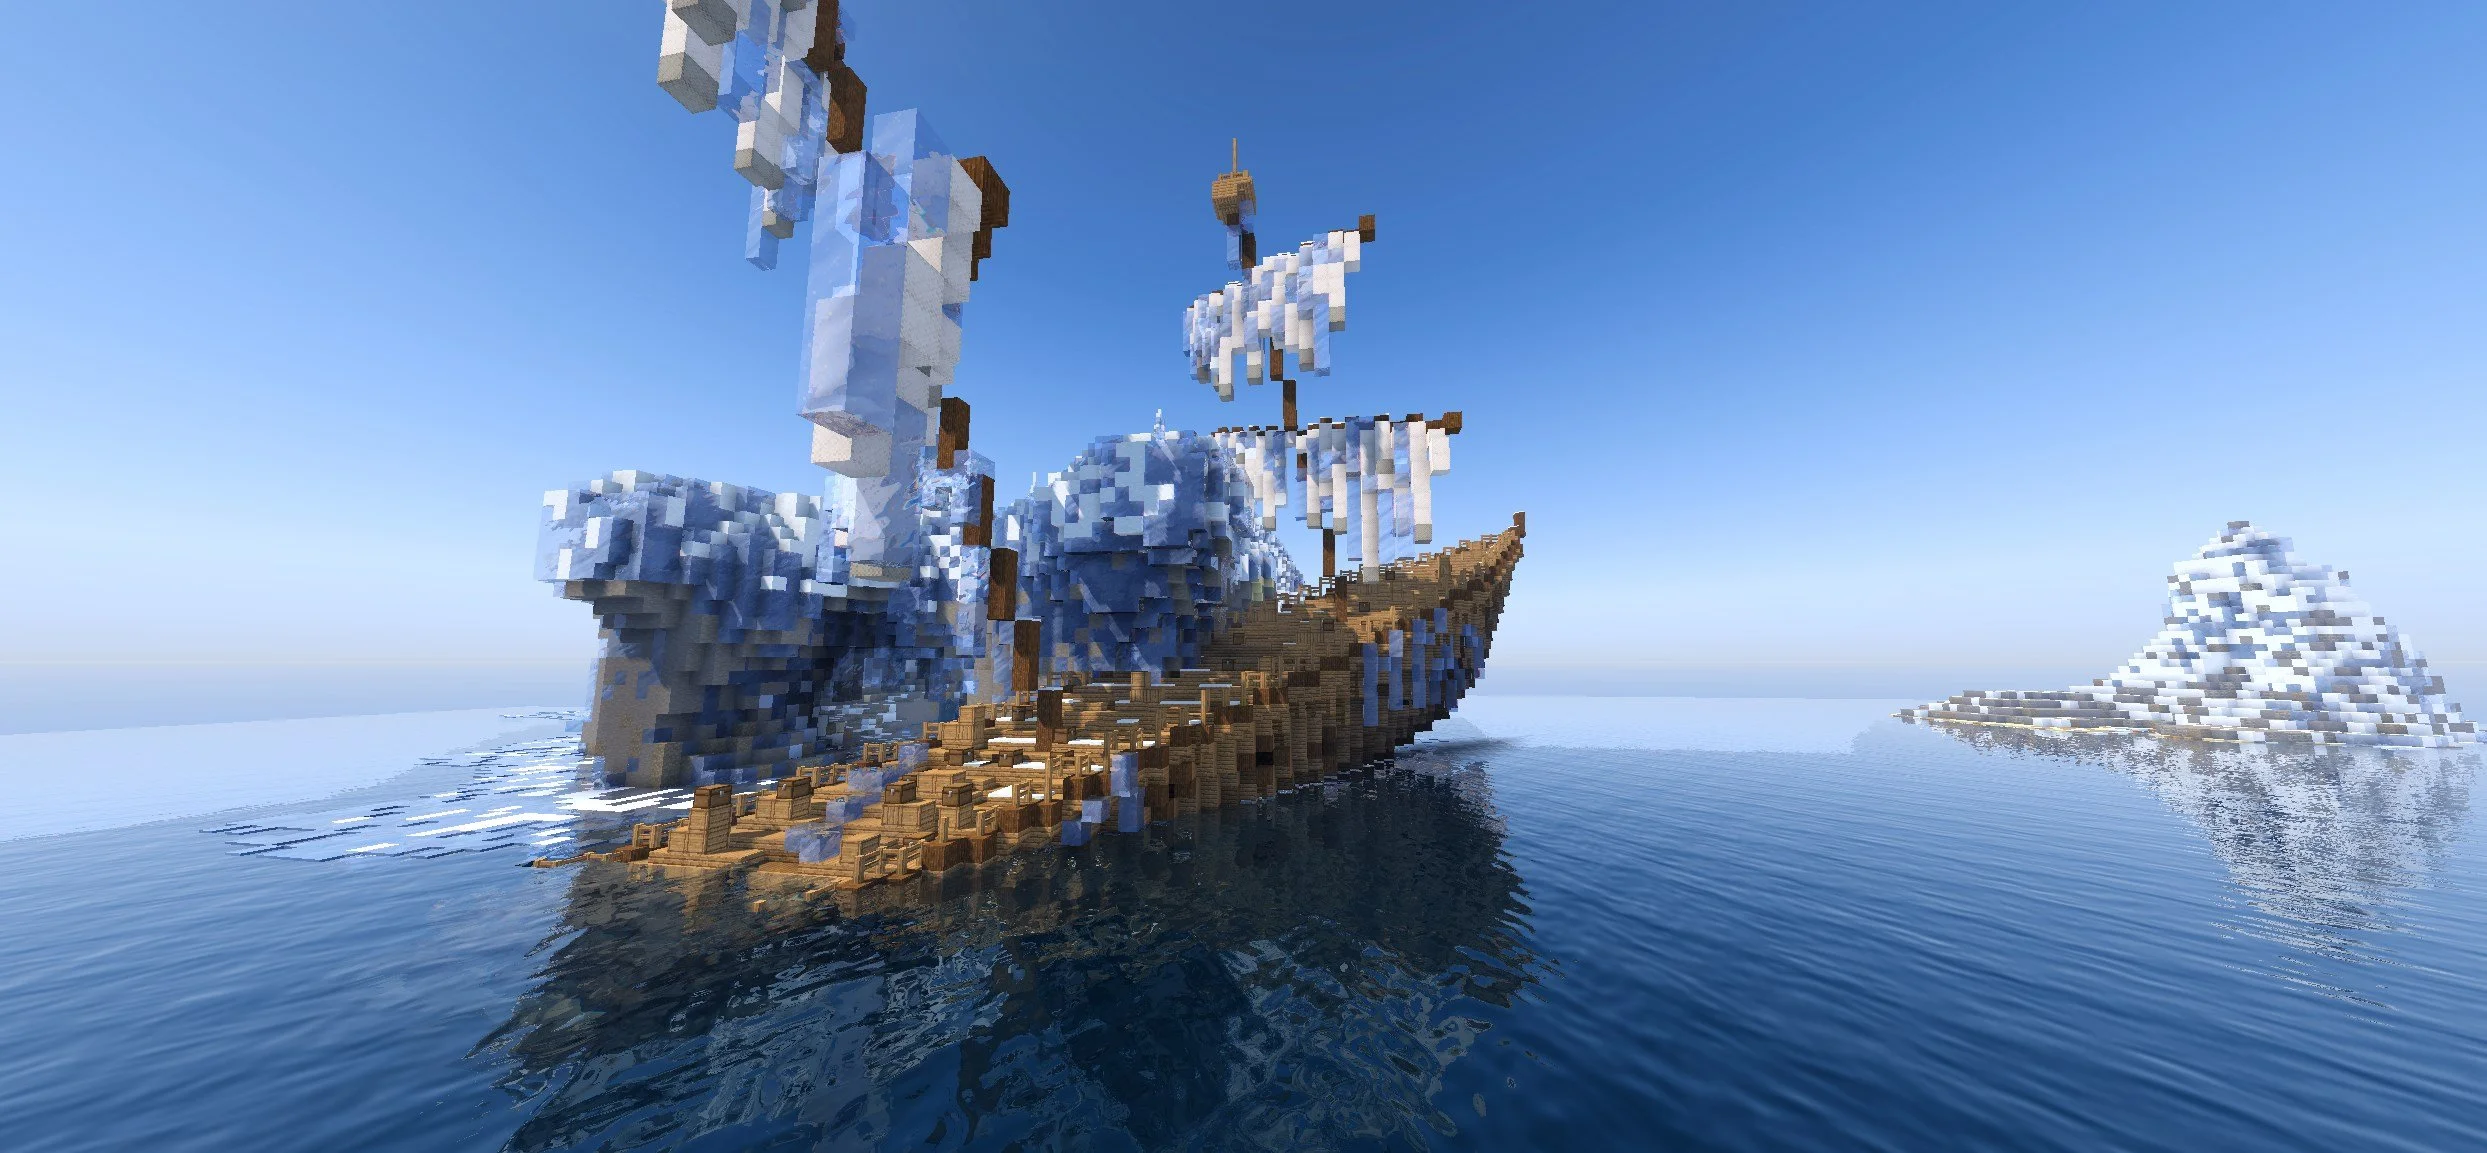 22 млн кубов! Гигантская MMO, которая полностью сделана в Minecraft - фото 5